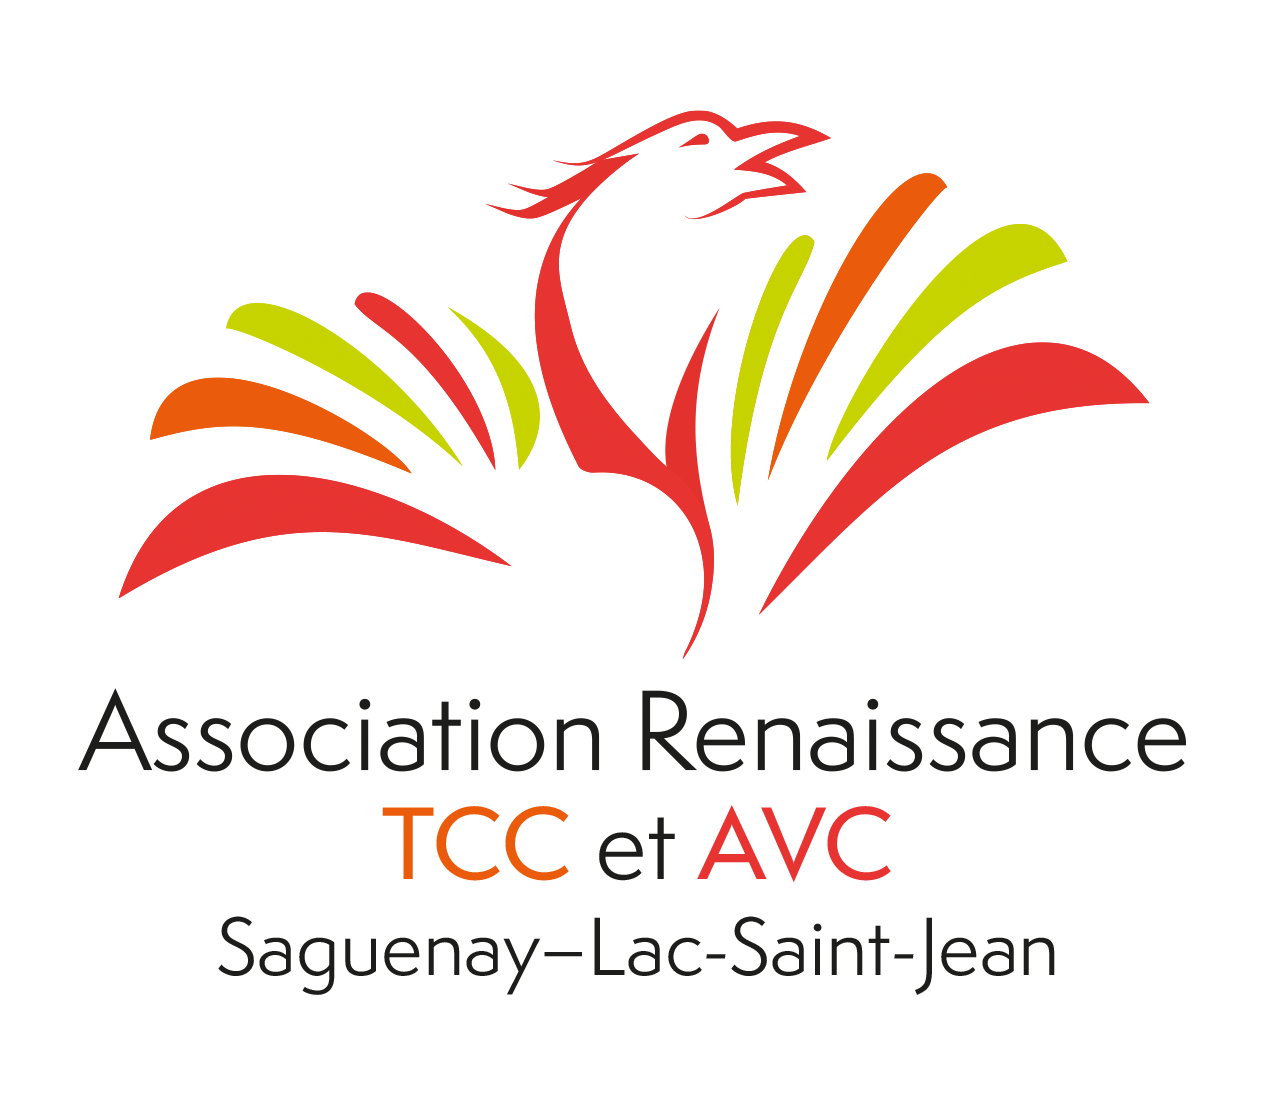 Association Renaissance TCC et AVC Saguenay-Lac-Saint-Jean